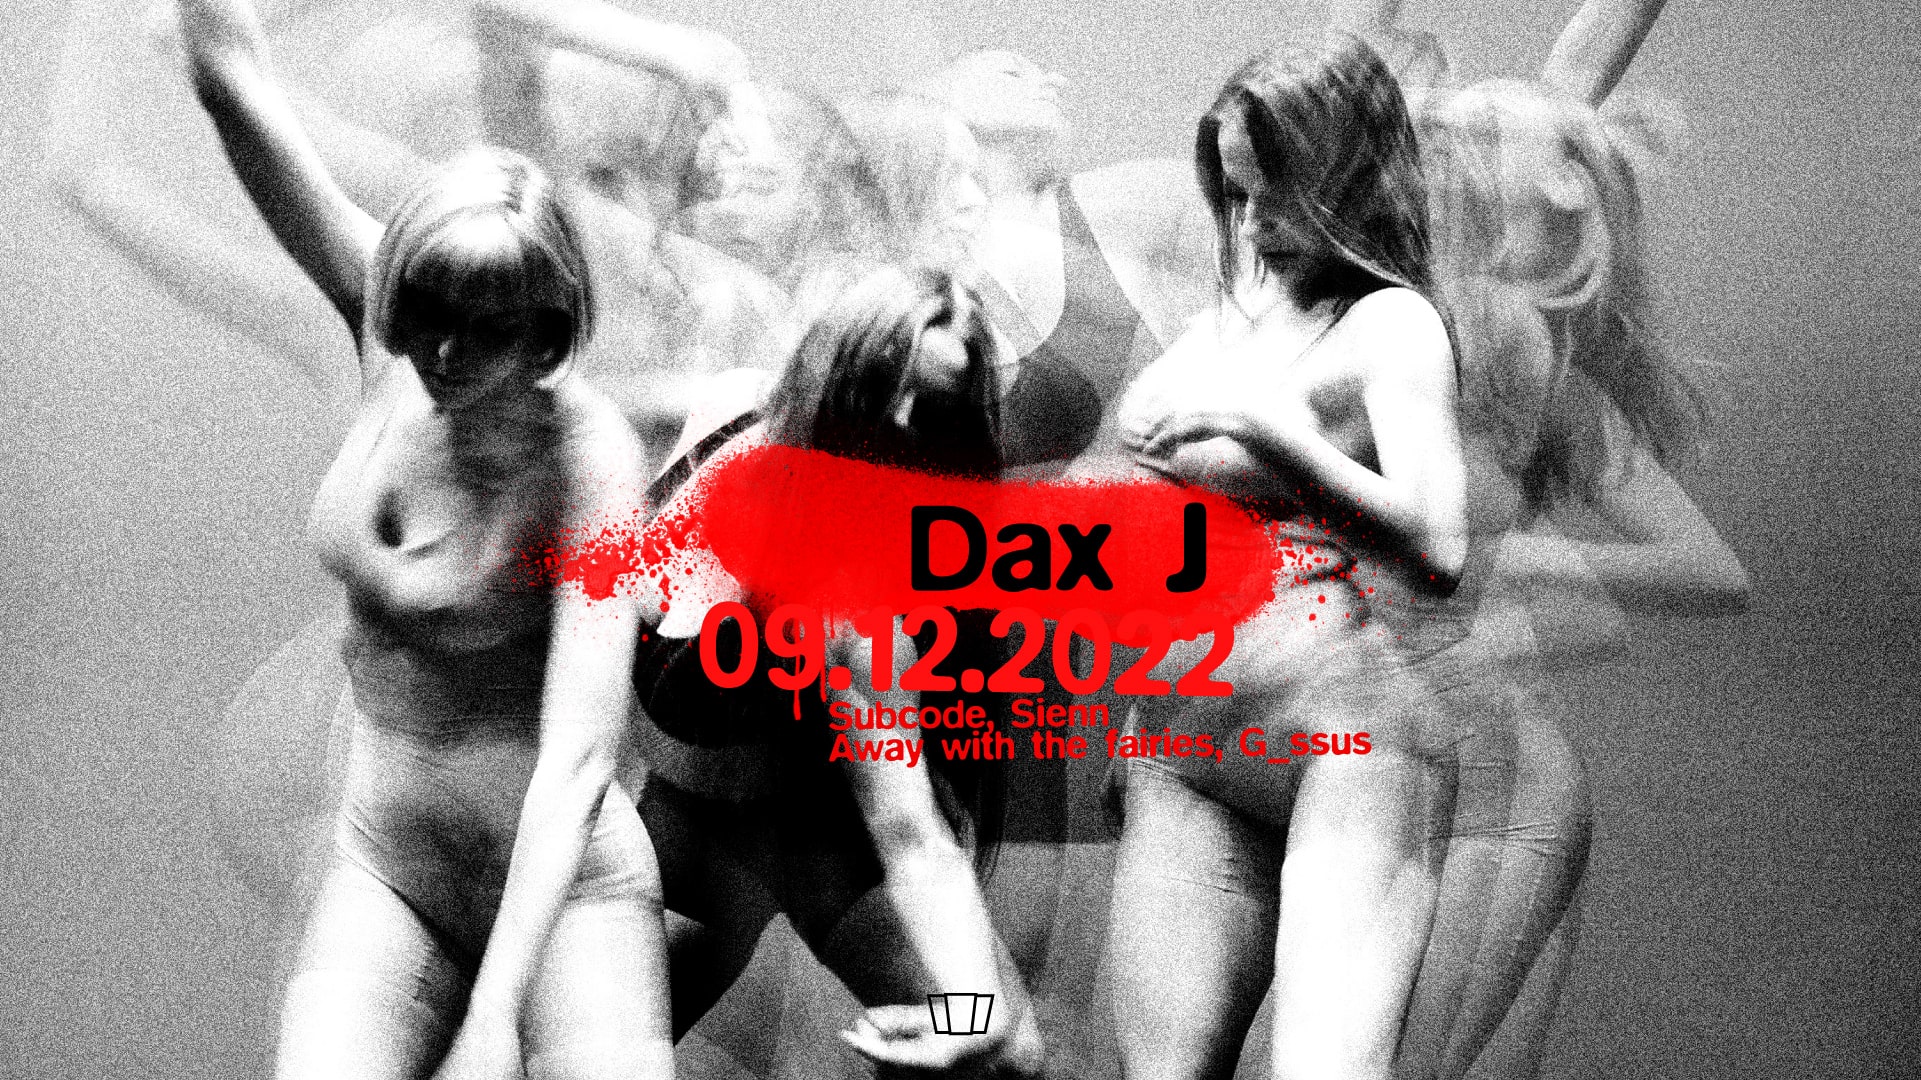 Smolna: Dax J / Sienn / Subcode / Away with the fairies / G_ssus